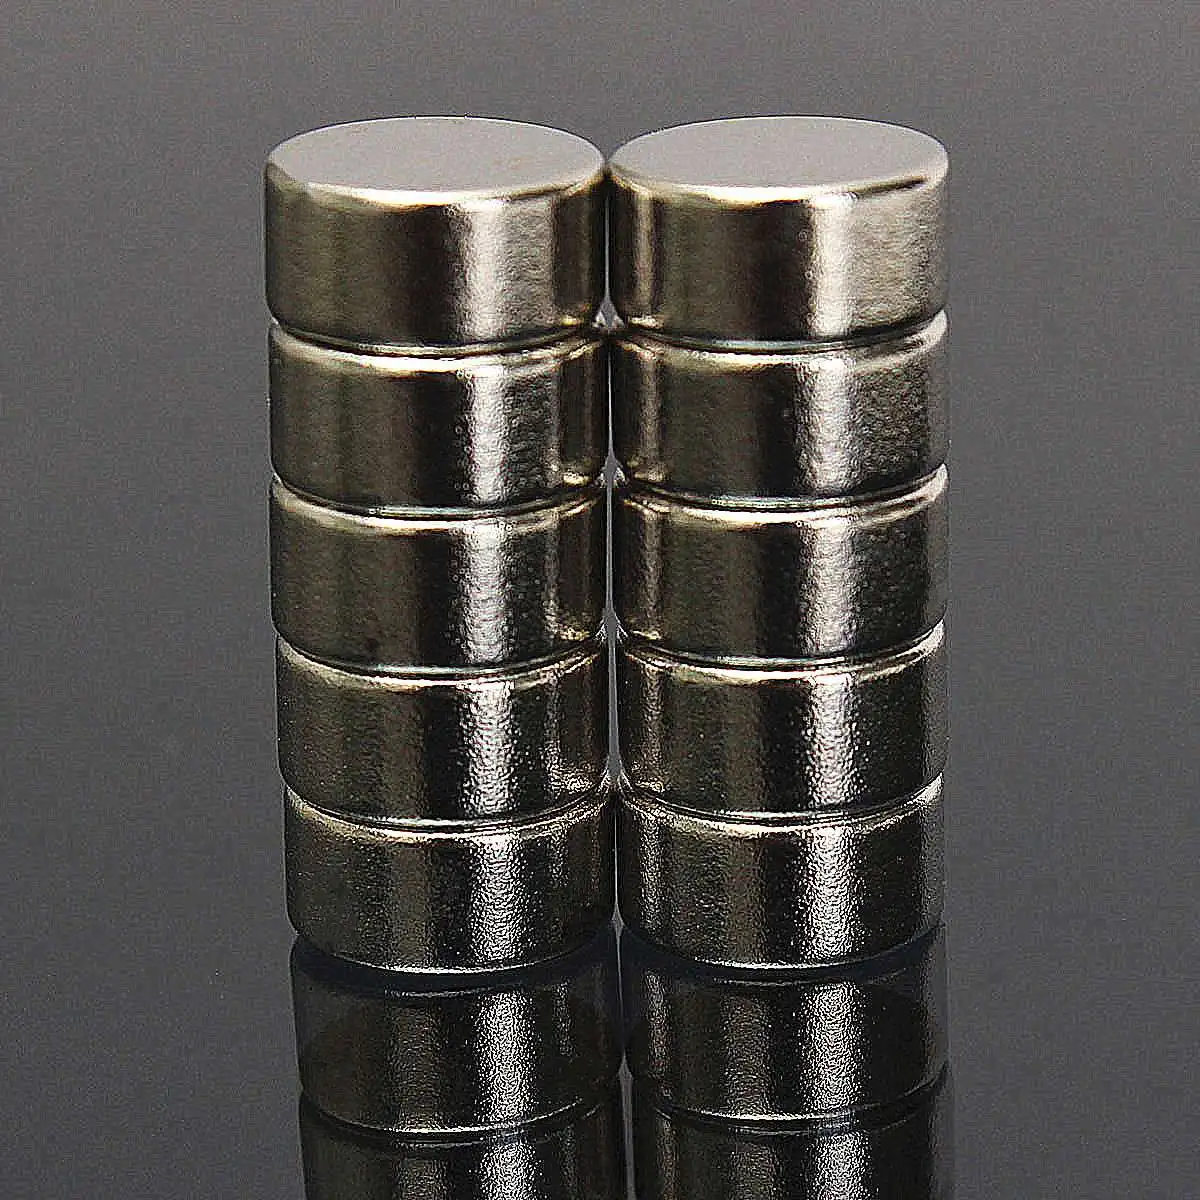 10 мм x 5 мм 30 шт. Редкоземельные неодимовые магниты N52 Сильный Круглый цилиндр магнит NdFeB магнитные материалы очень мощные